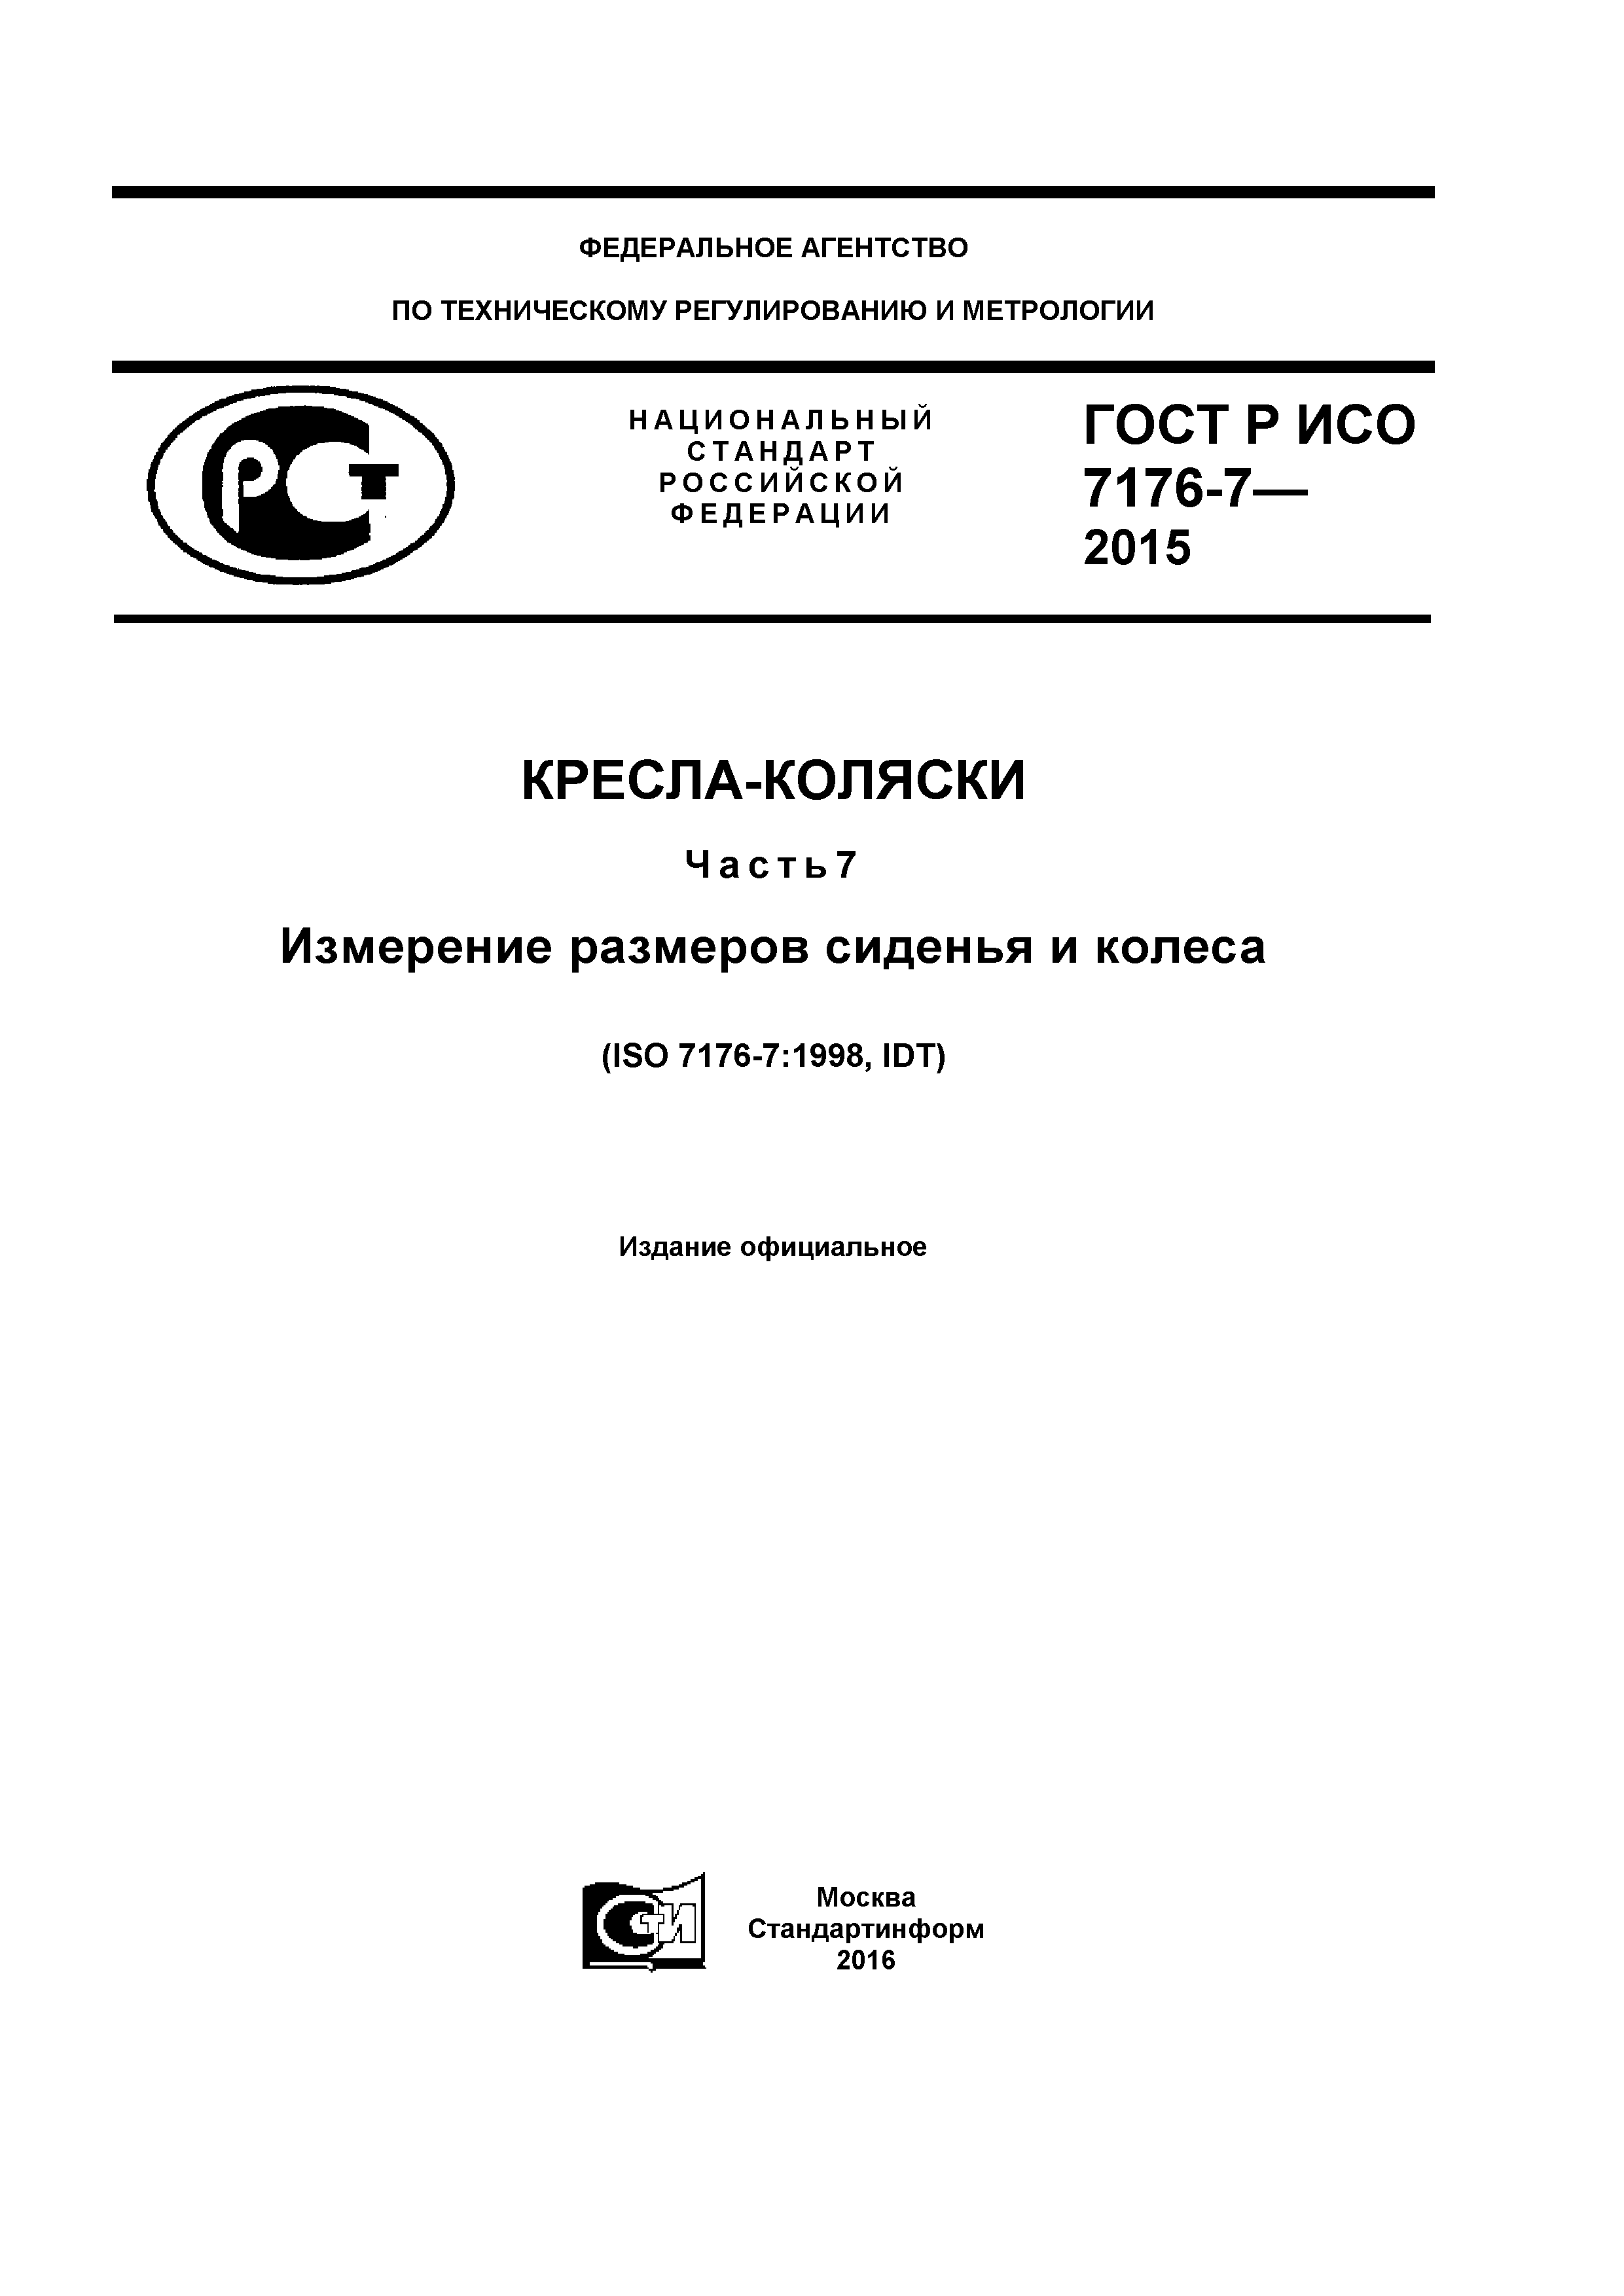 ГОСТ Р ИСО 7176-7-2015